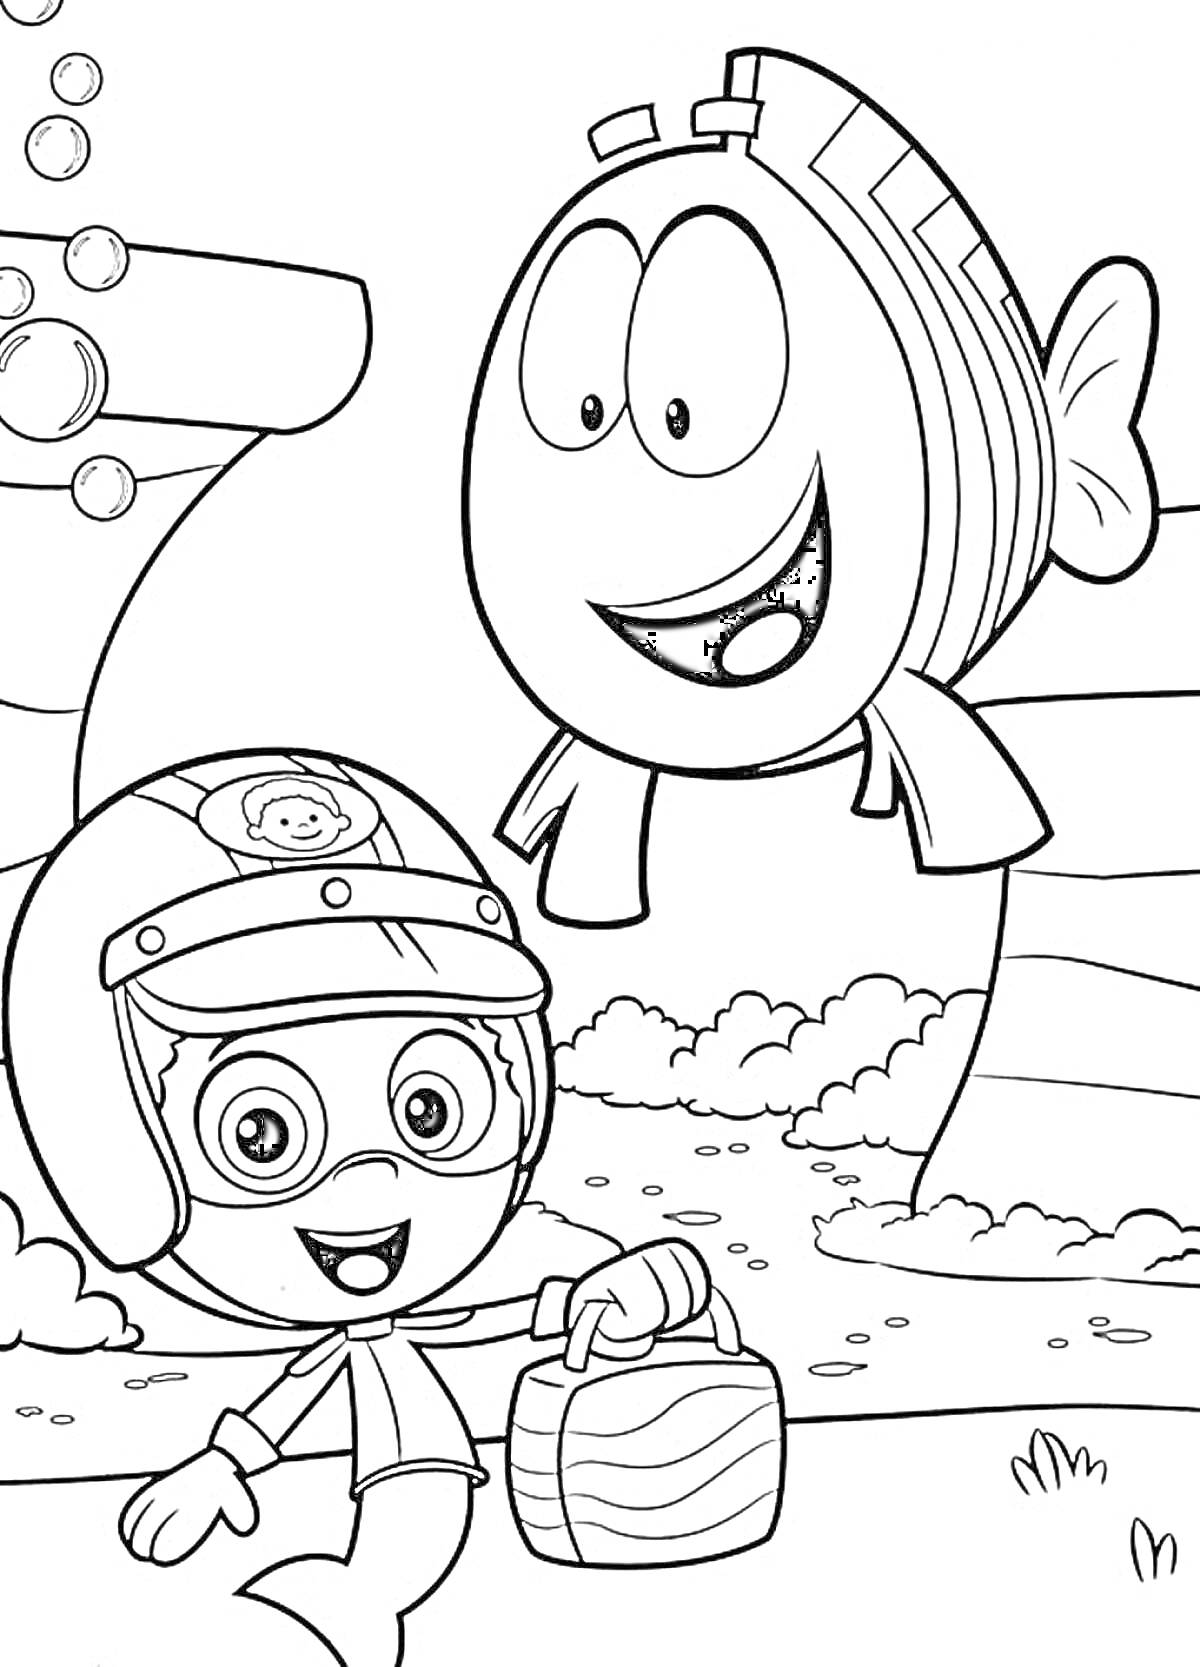 Два персонажа рядом с подводными трубами и пузырьками